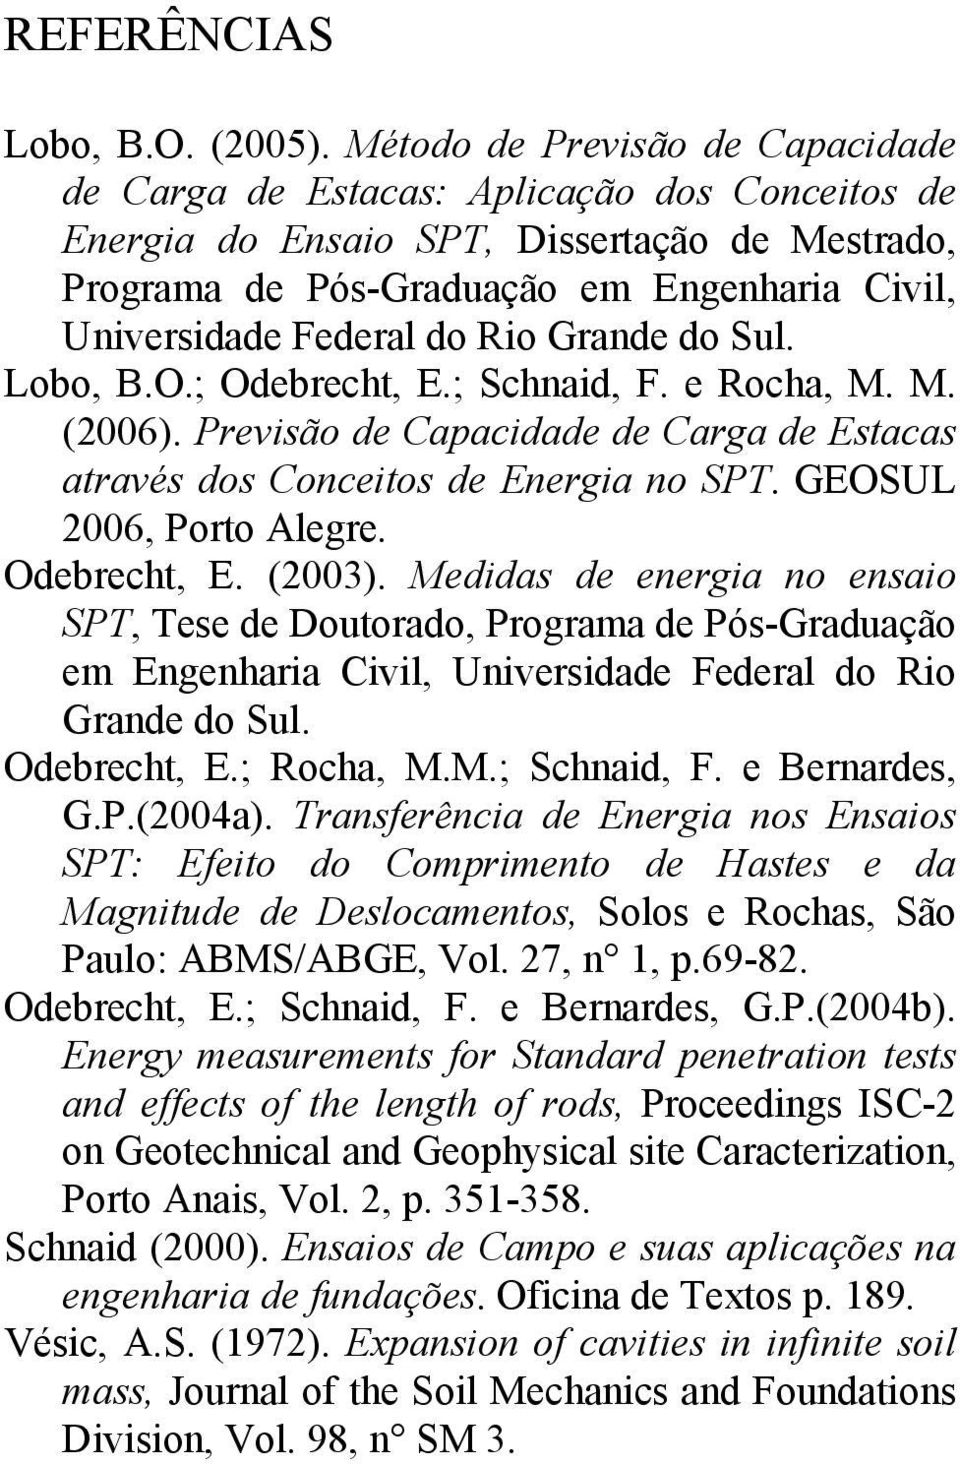 Rio Grande do Sul. Lobo, B.O.; Odebrecht, E.; Schnaid, F. e Rocha, M. M. (2006). Previsão de Capacidade de Carga de Estacas através dos Conceitos de Energia no SPT. GEOSUL 2006, Porto Alegre.